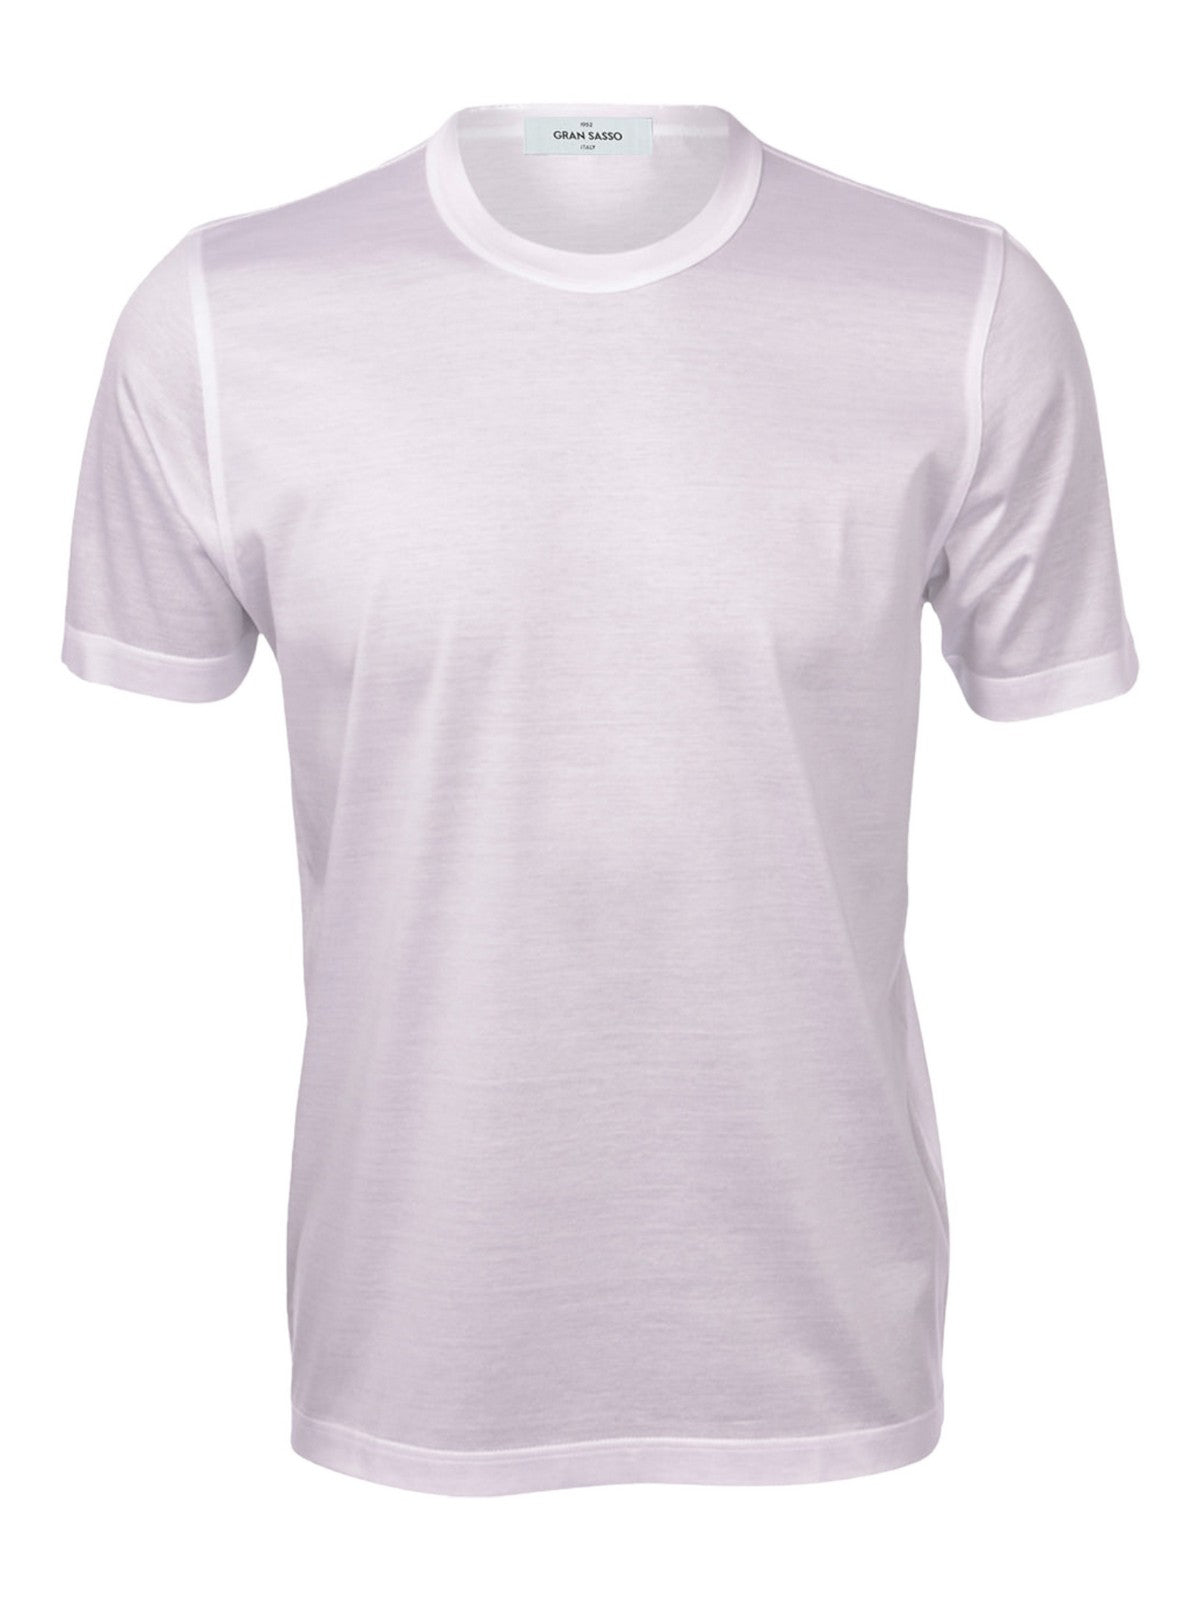 GRAN SASSO T-Shirt e Polo Uomo  60133/74002 001 Bianco